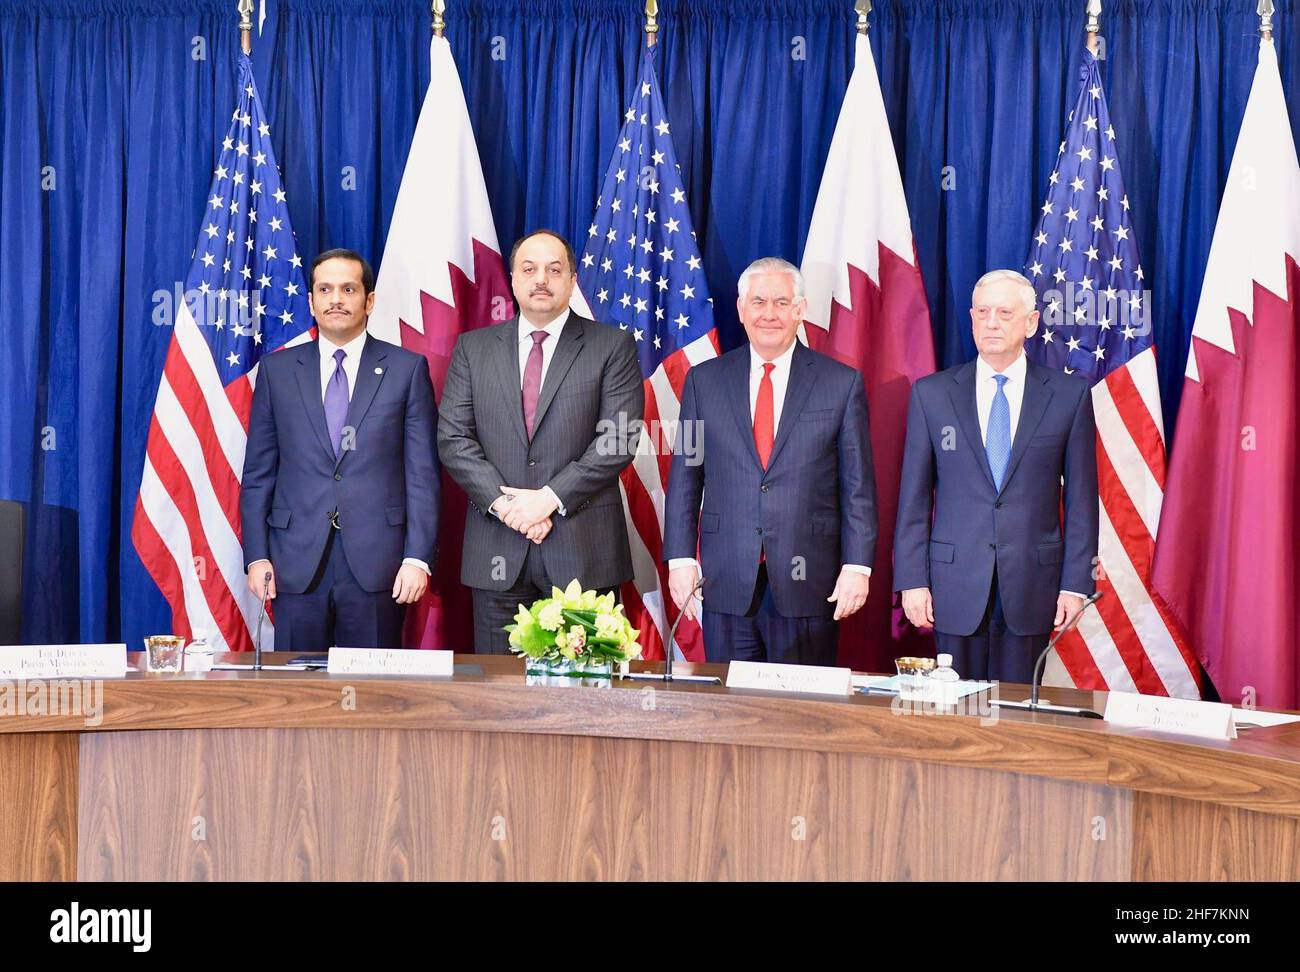 Sekretär Tillerson und Sekretär Mattis sind Co-Gastgeber der hochrangigen Eröffnungssitzung des ersten strategischen Dialogs zwischen den USA und Katar. Stockfoto